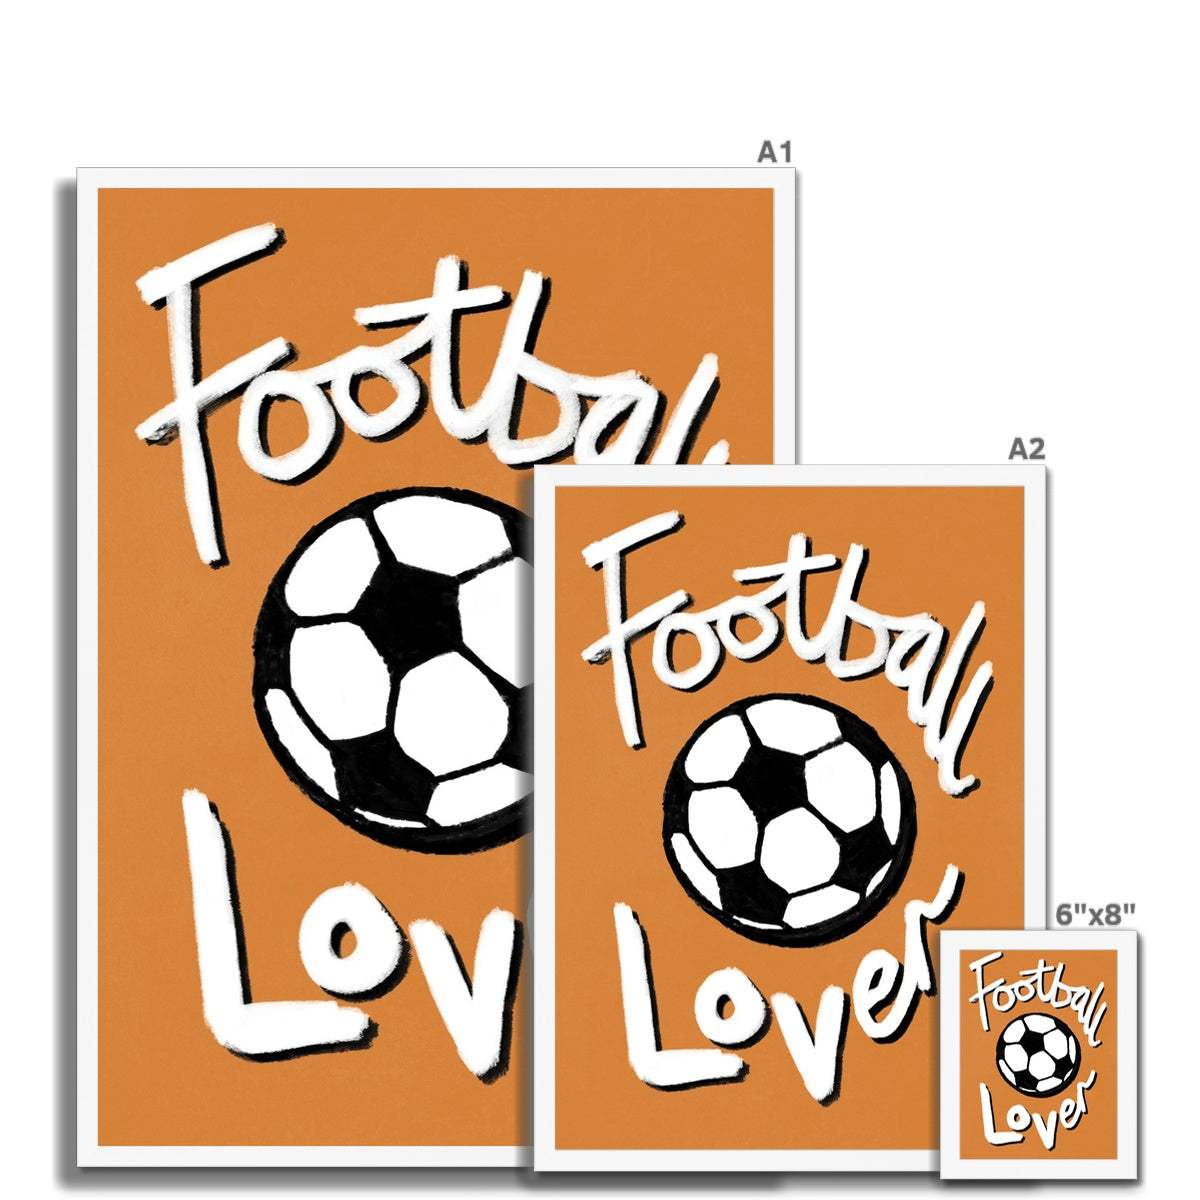 Football Lover Print - Brown, White, Black Framed Print